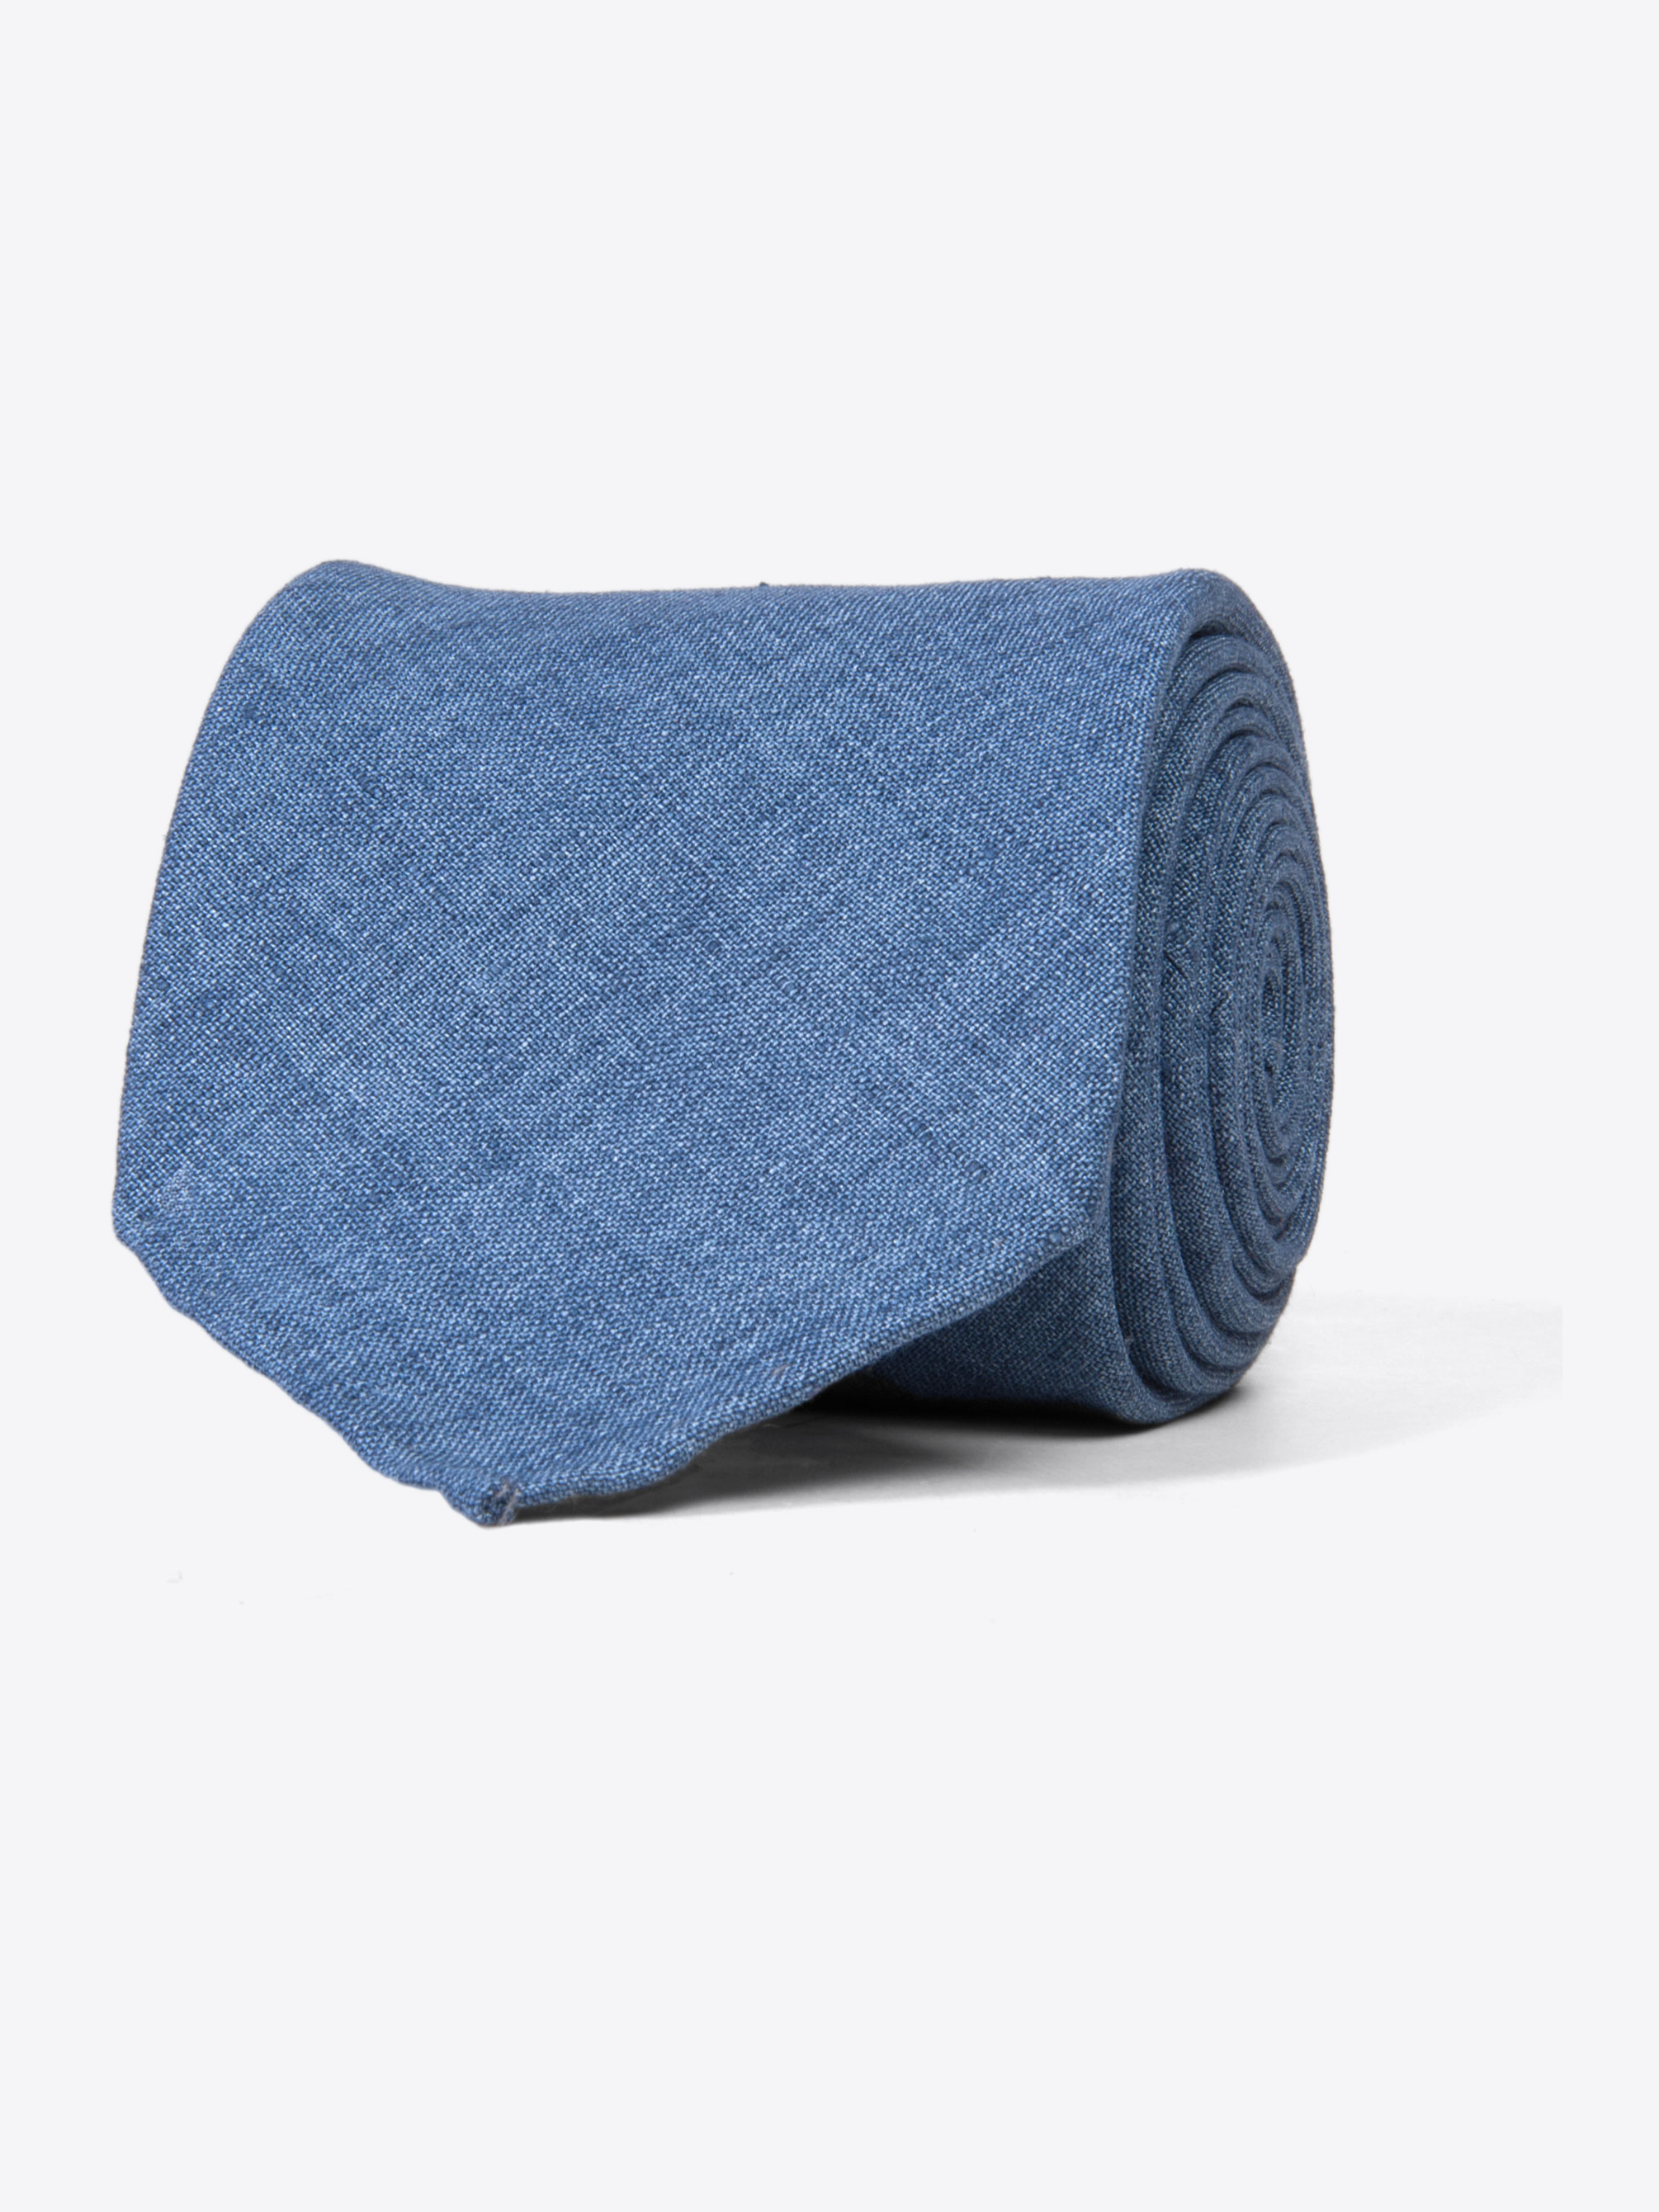 Zoom Image of Portofino Indigo Linen Tie